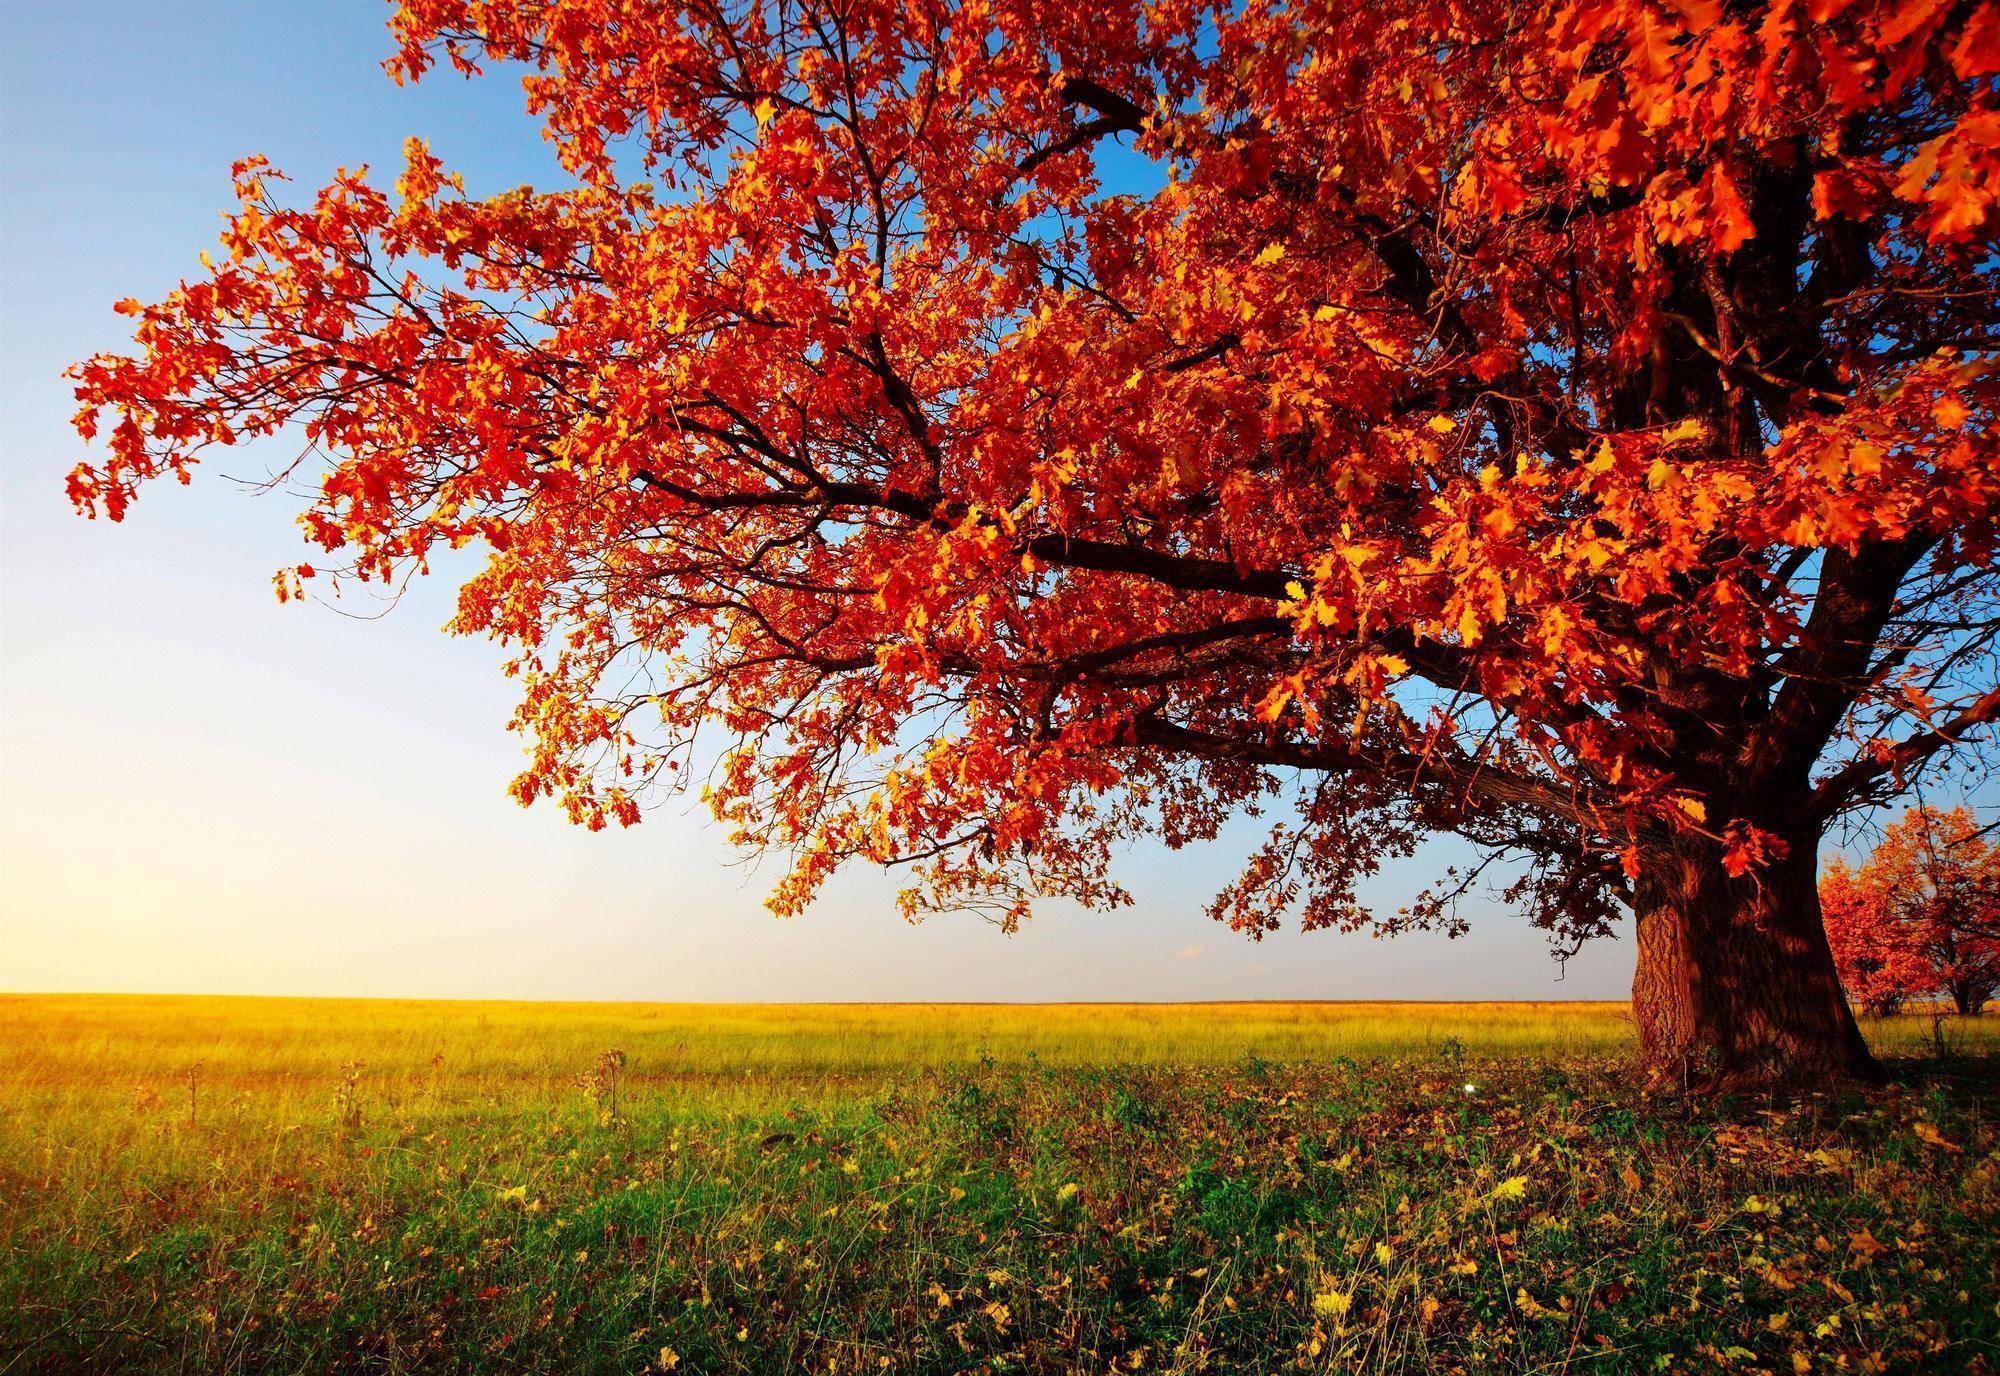 Hình nền cây mùa thu: Những cây lá rực rỡ mùa thu luôn mang lại cảm giác ấm áp và gần gũi với thiên nhiên. Hãy sử dụng những hình nền cây mùa thu đẹp mắt của chúng tôi để tạo không gian làm việc sống động và đầy cảm hứng.